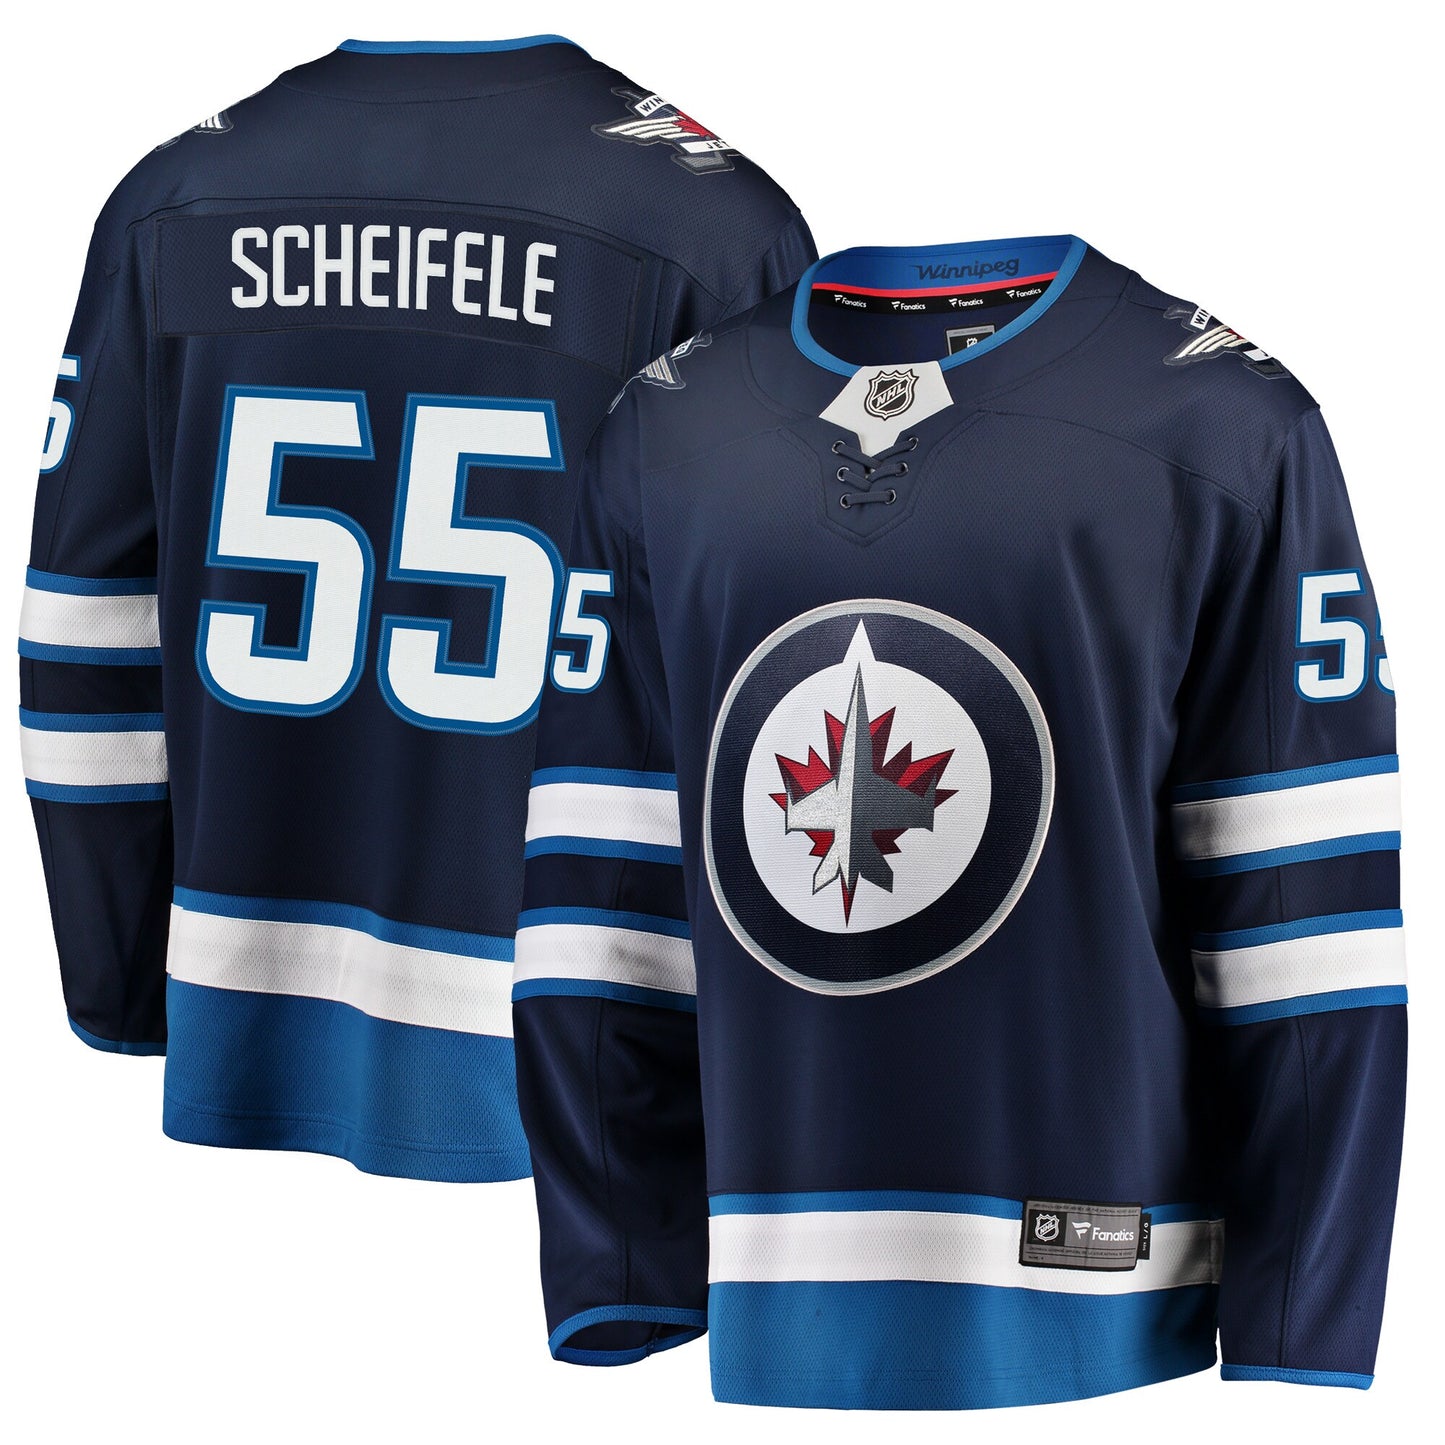 Mark Scheifele Winnipeg Jets Fanatics Branded Breakaway Replica Jersey - Navy